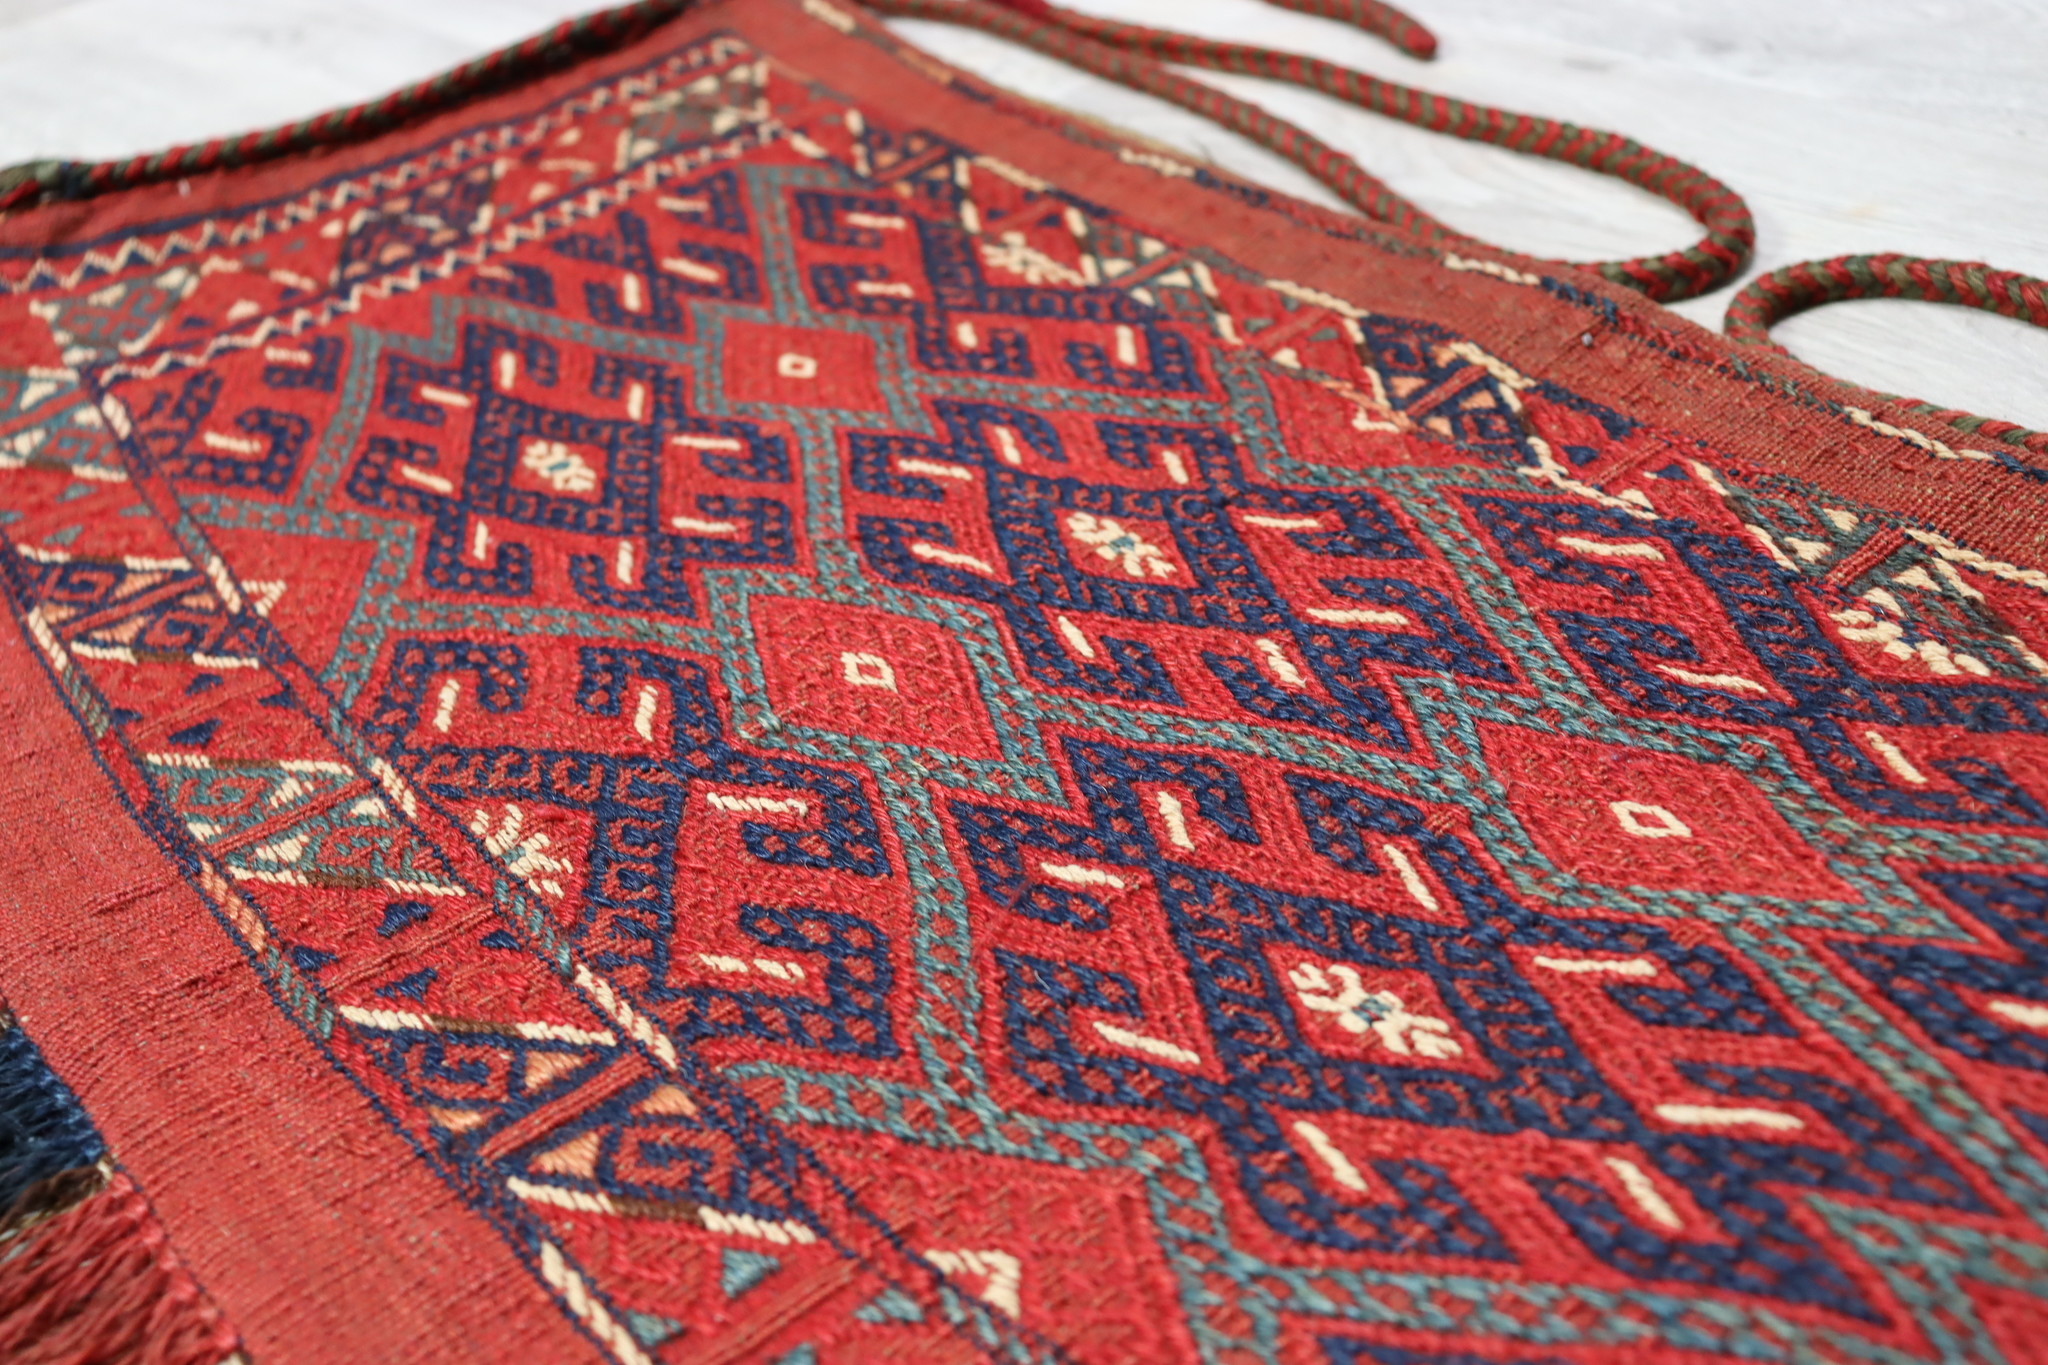 90x70 cm Antik und seltener Uzbek Nomaden Zelttasche tasche Torba aus Afghanistan Djaller Turkmenistan  Nr:22/23